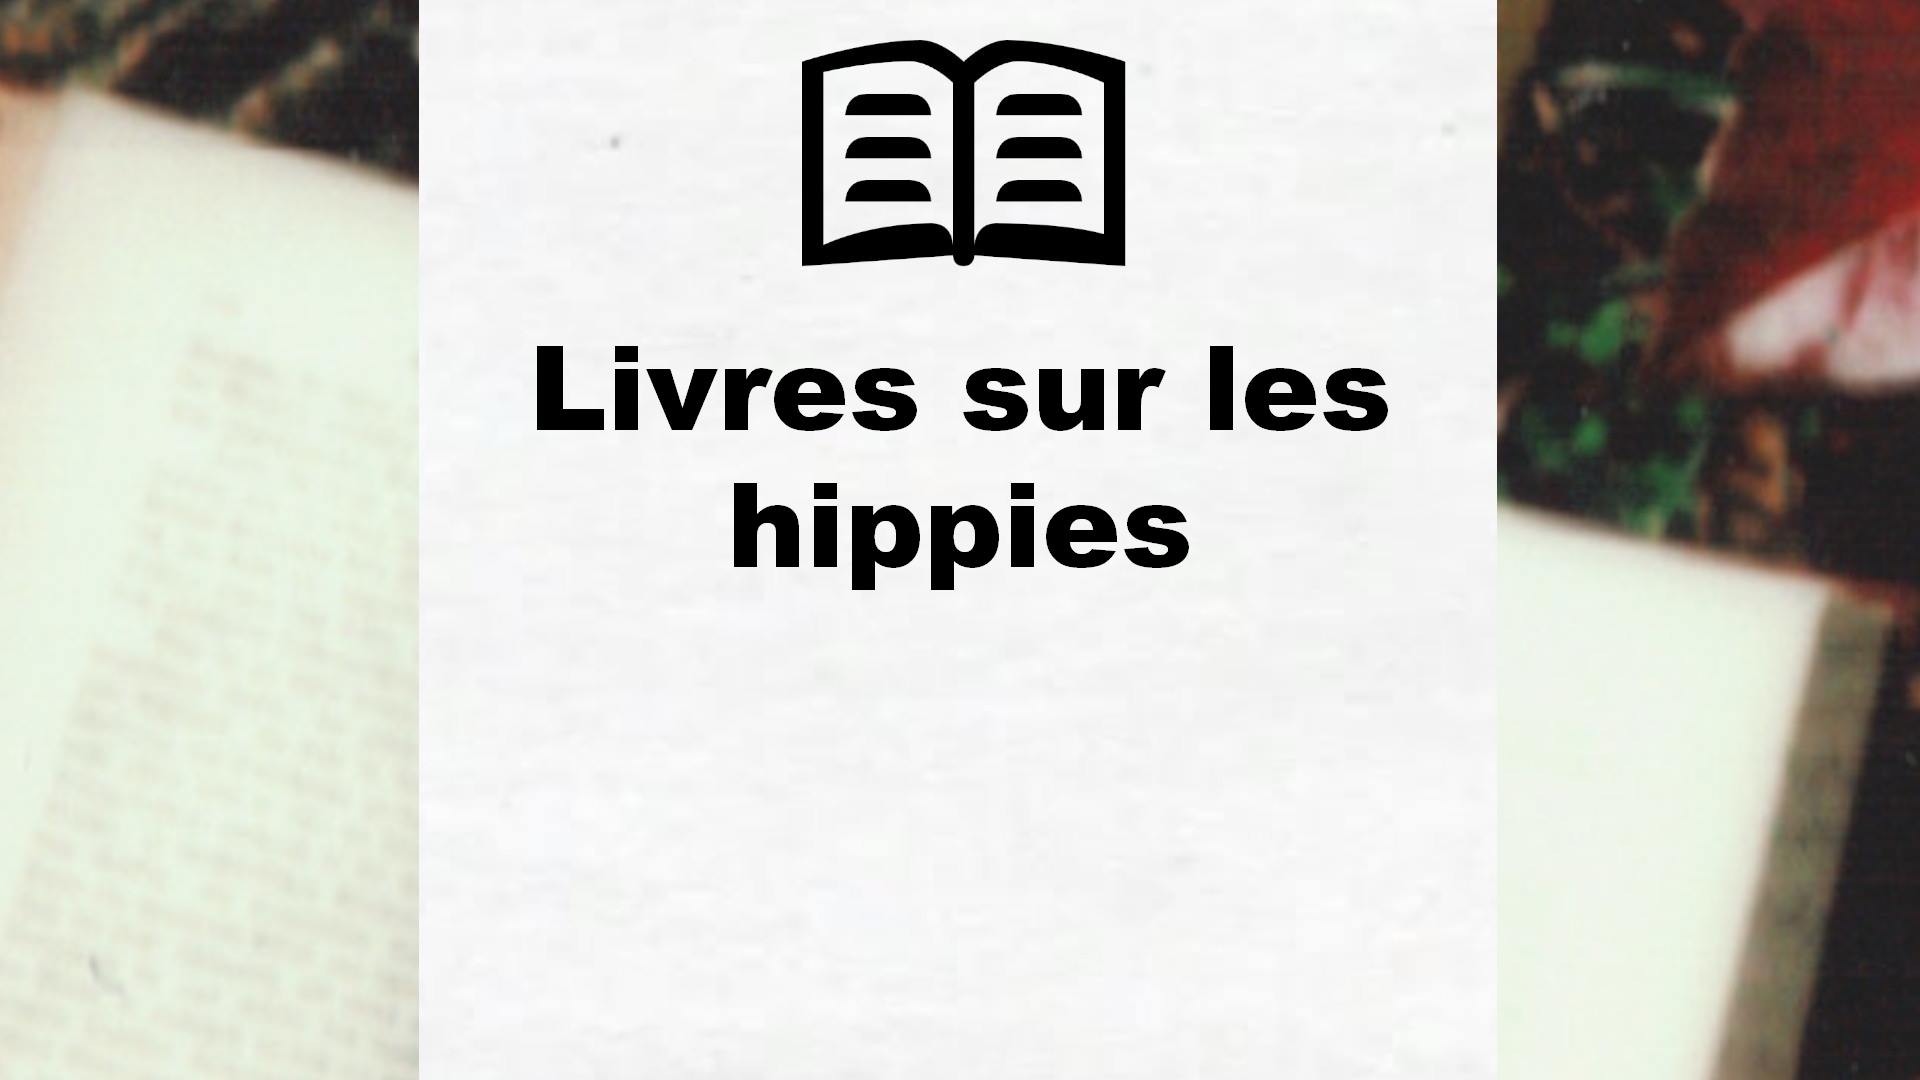 Livres sur les hippies